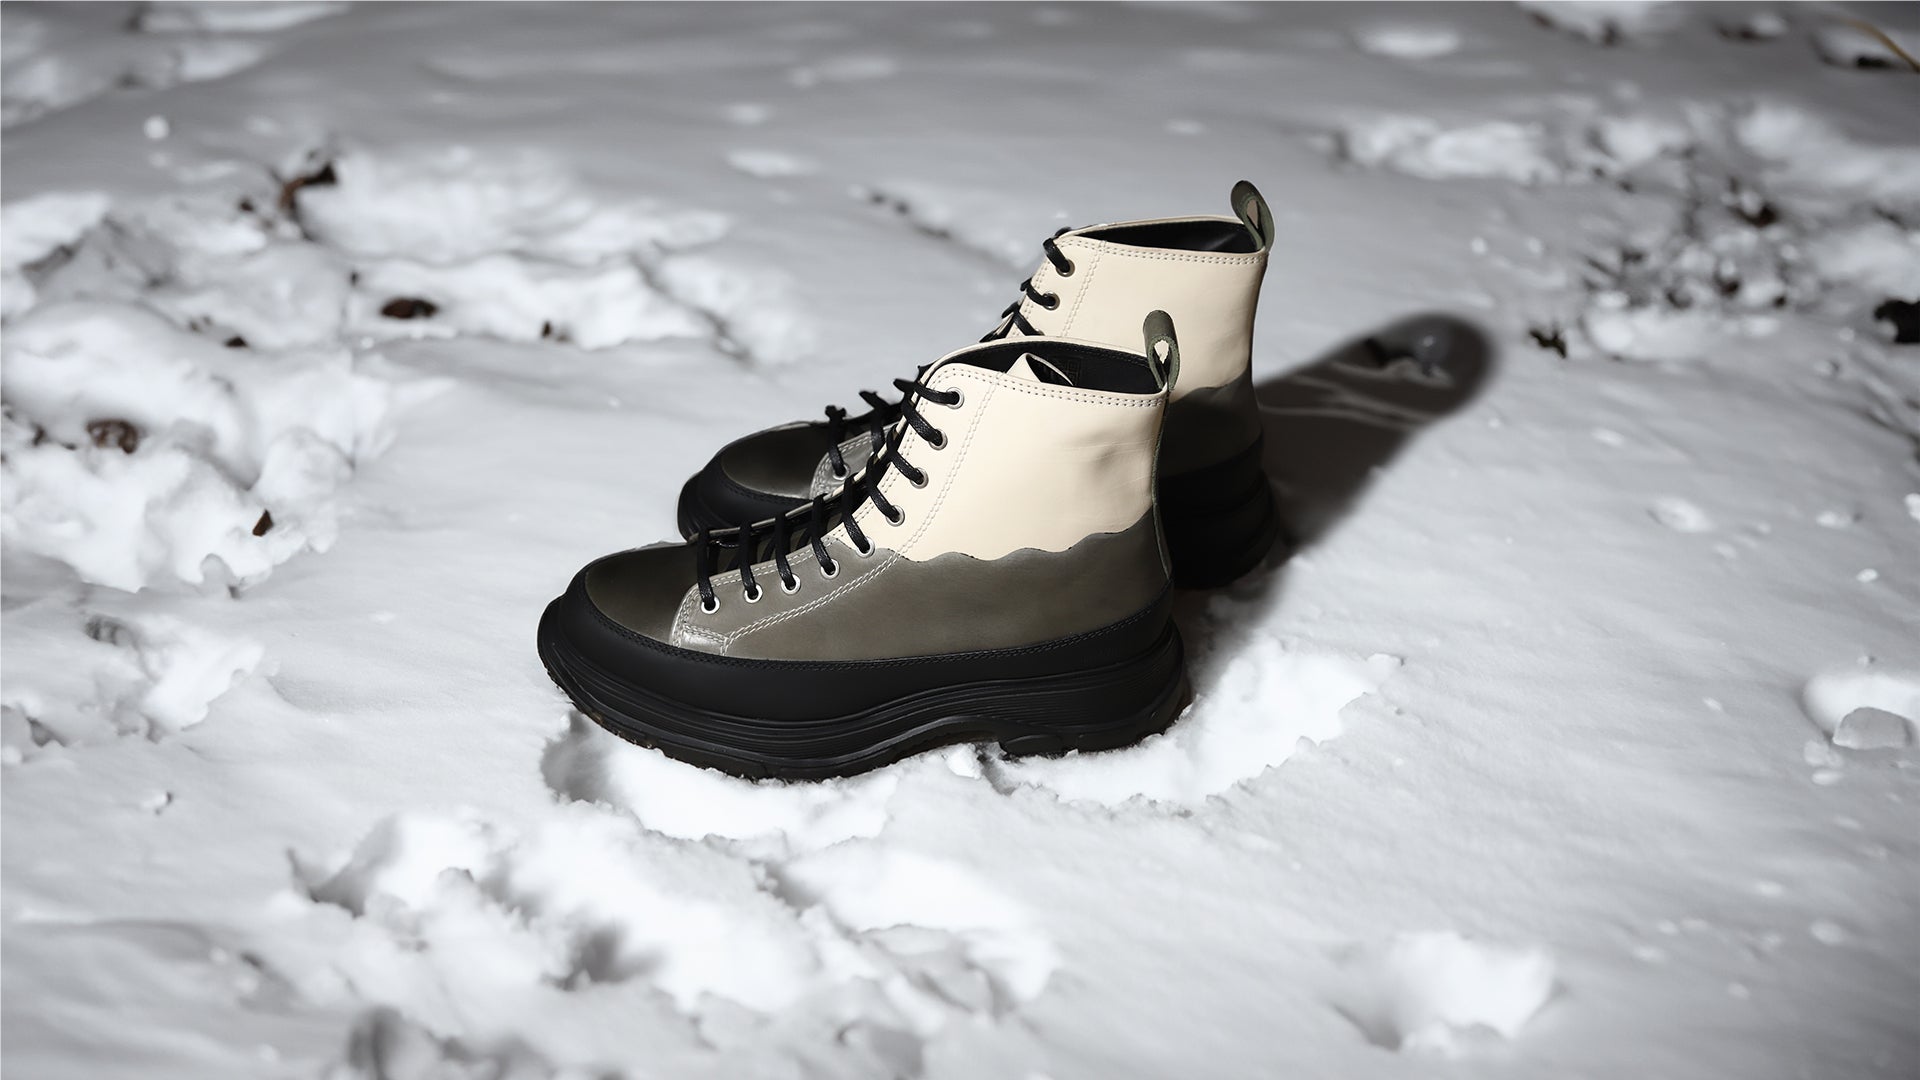 Six chaussures pour marcher dans la neige !